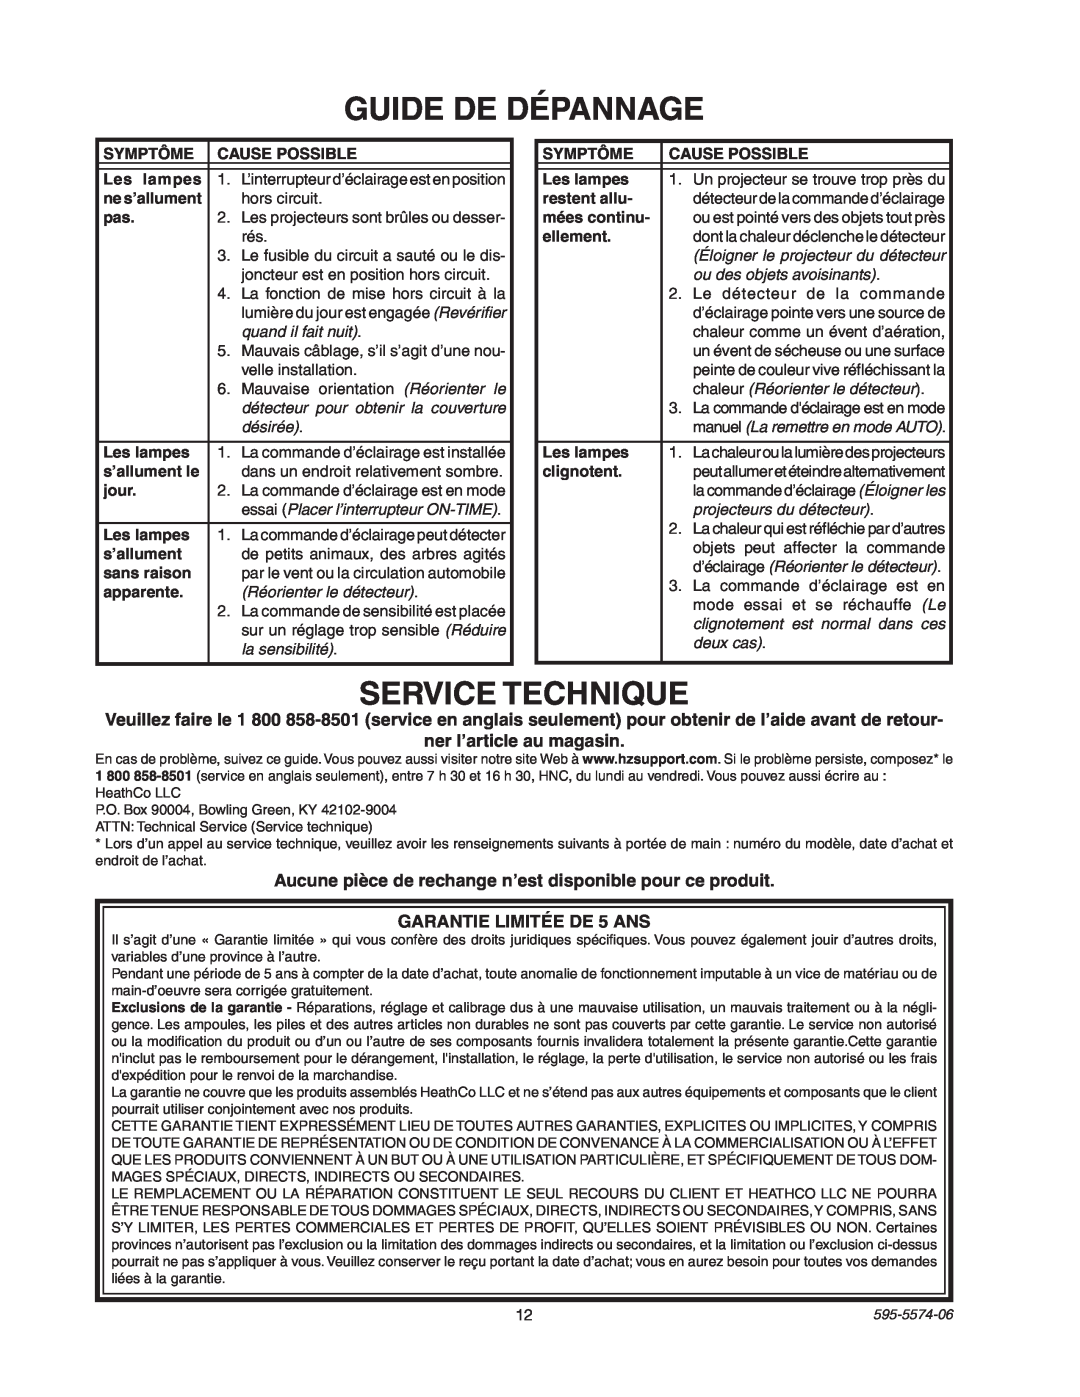 Heath Zenith SL-5511 manual Guide De Dépannage, Service Technique, ner l’article au magasin, GARANTIE LIMITÉE DE 5 ANS 